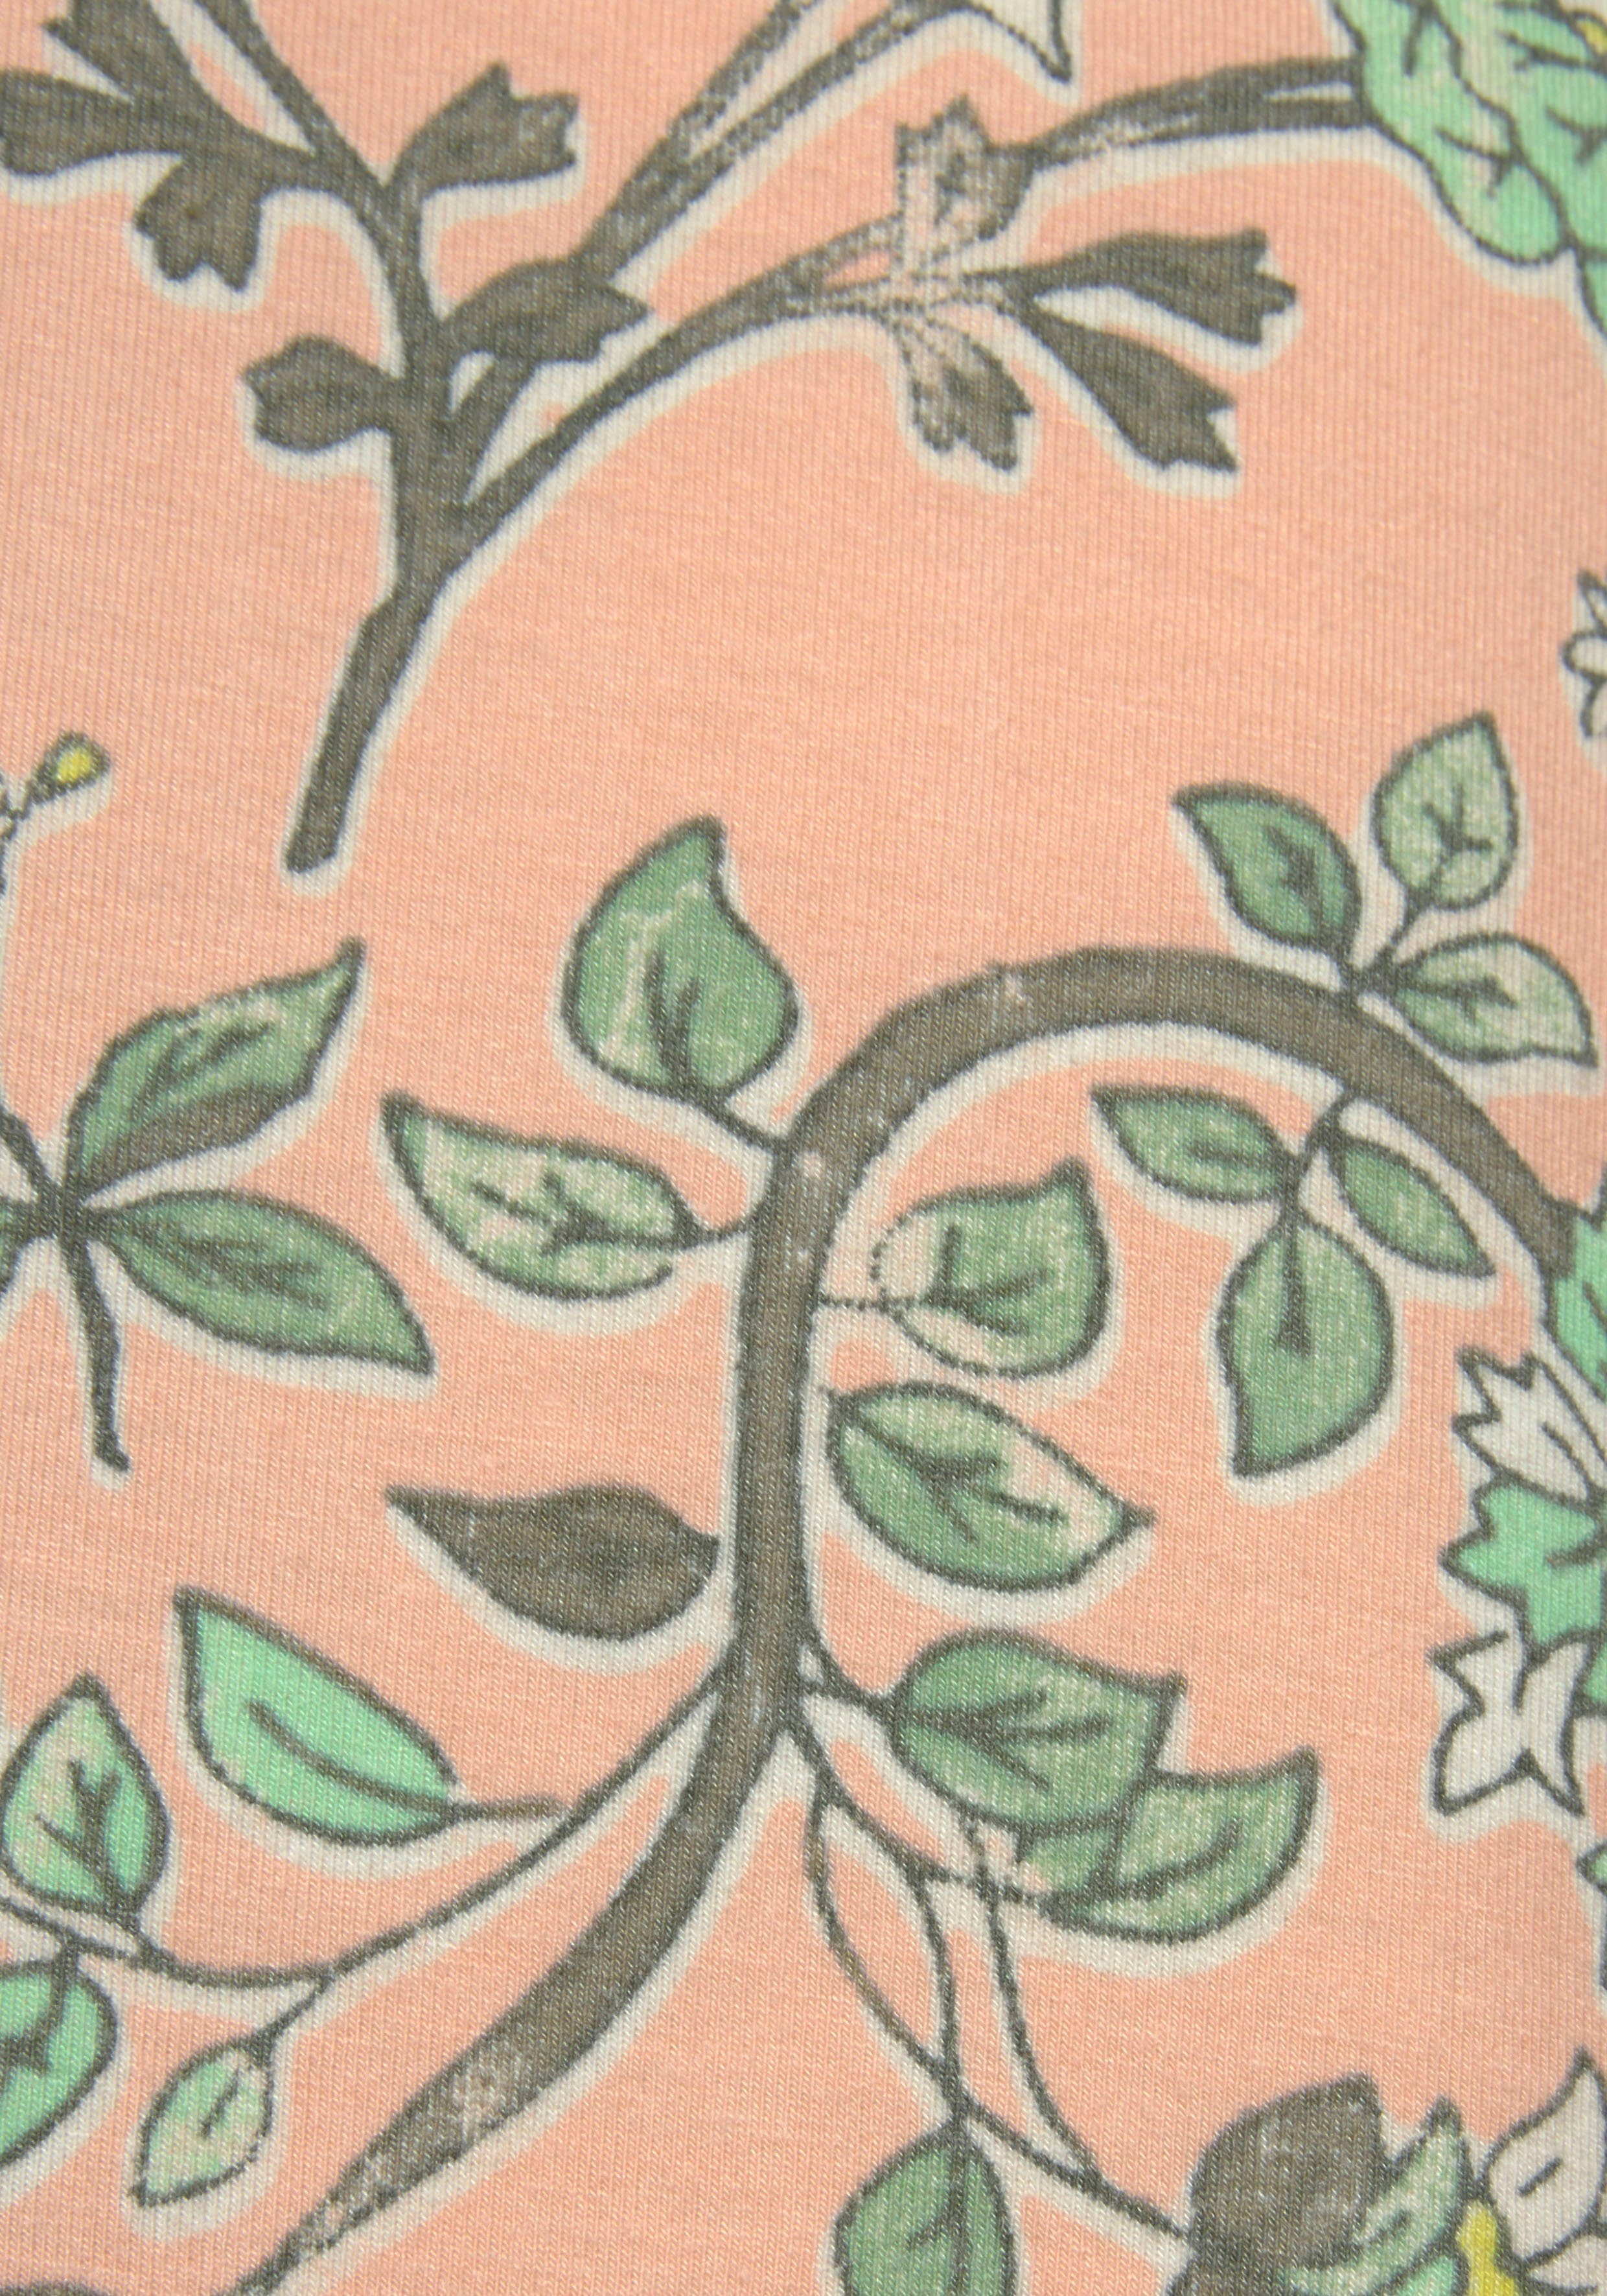 LASCANA Nachthemd im Allover-Druck Blumen nude-schilfgrün